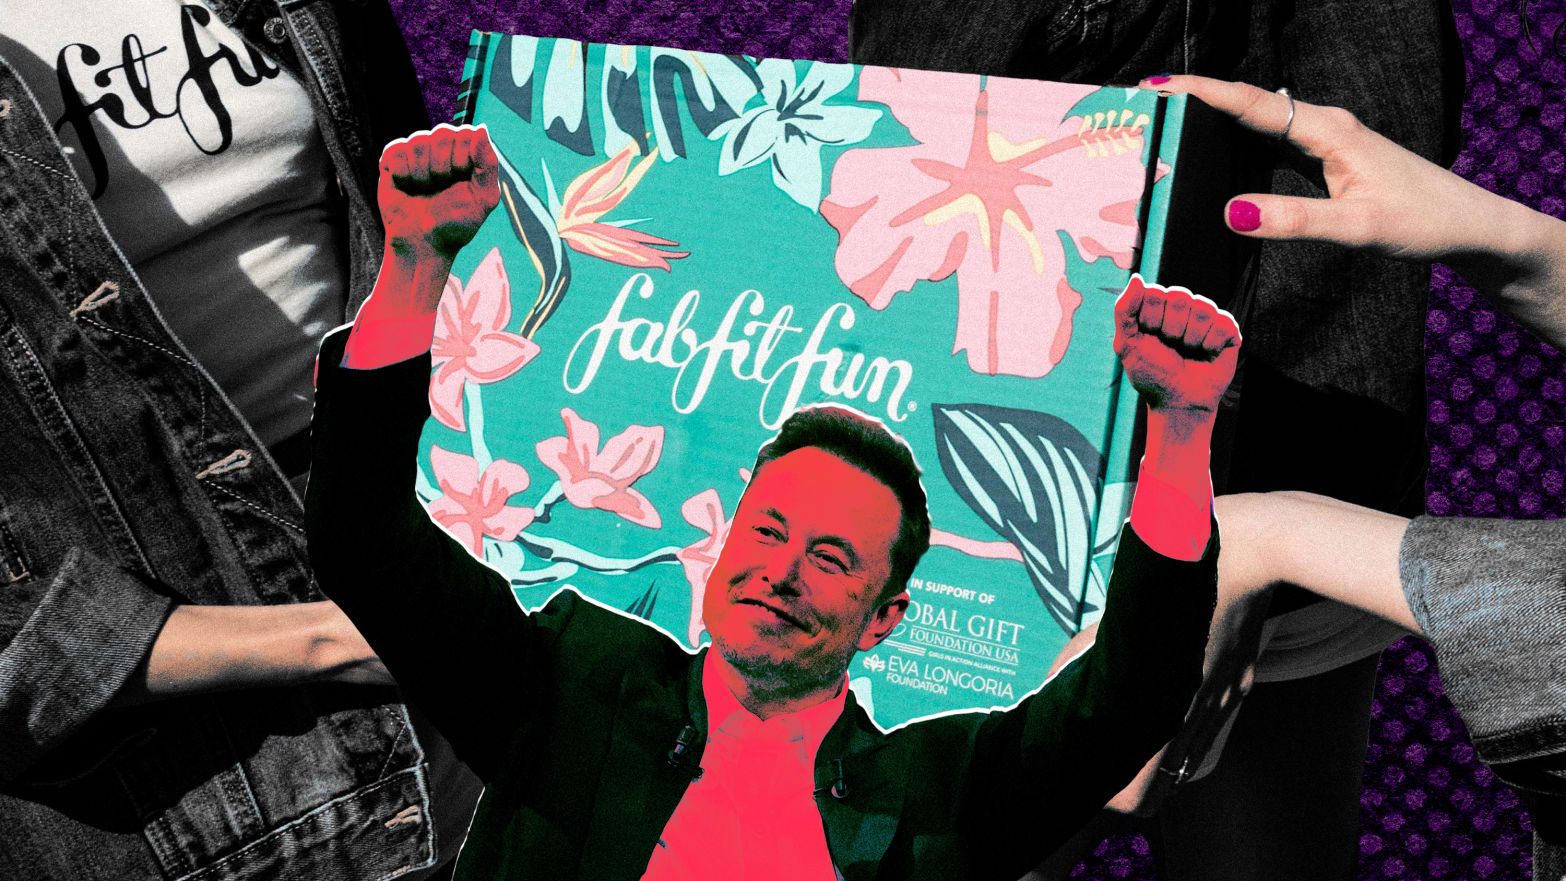 A photo illustration of a FabFitFun box and Elon Musk.